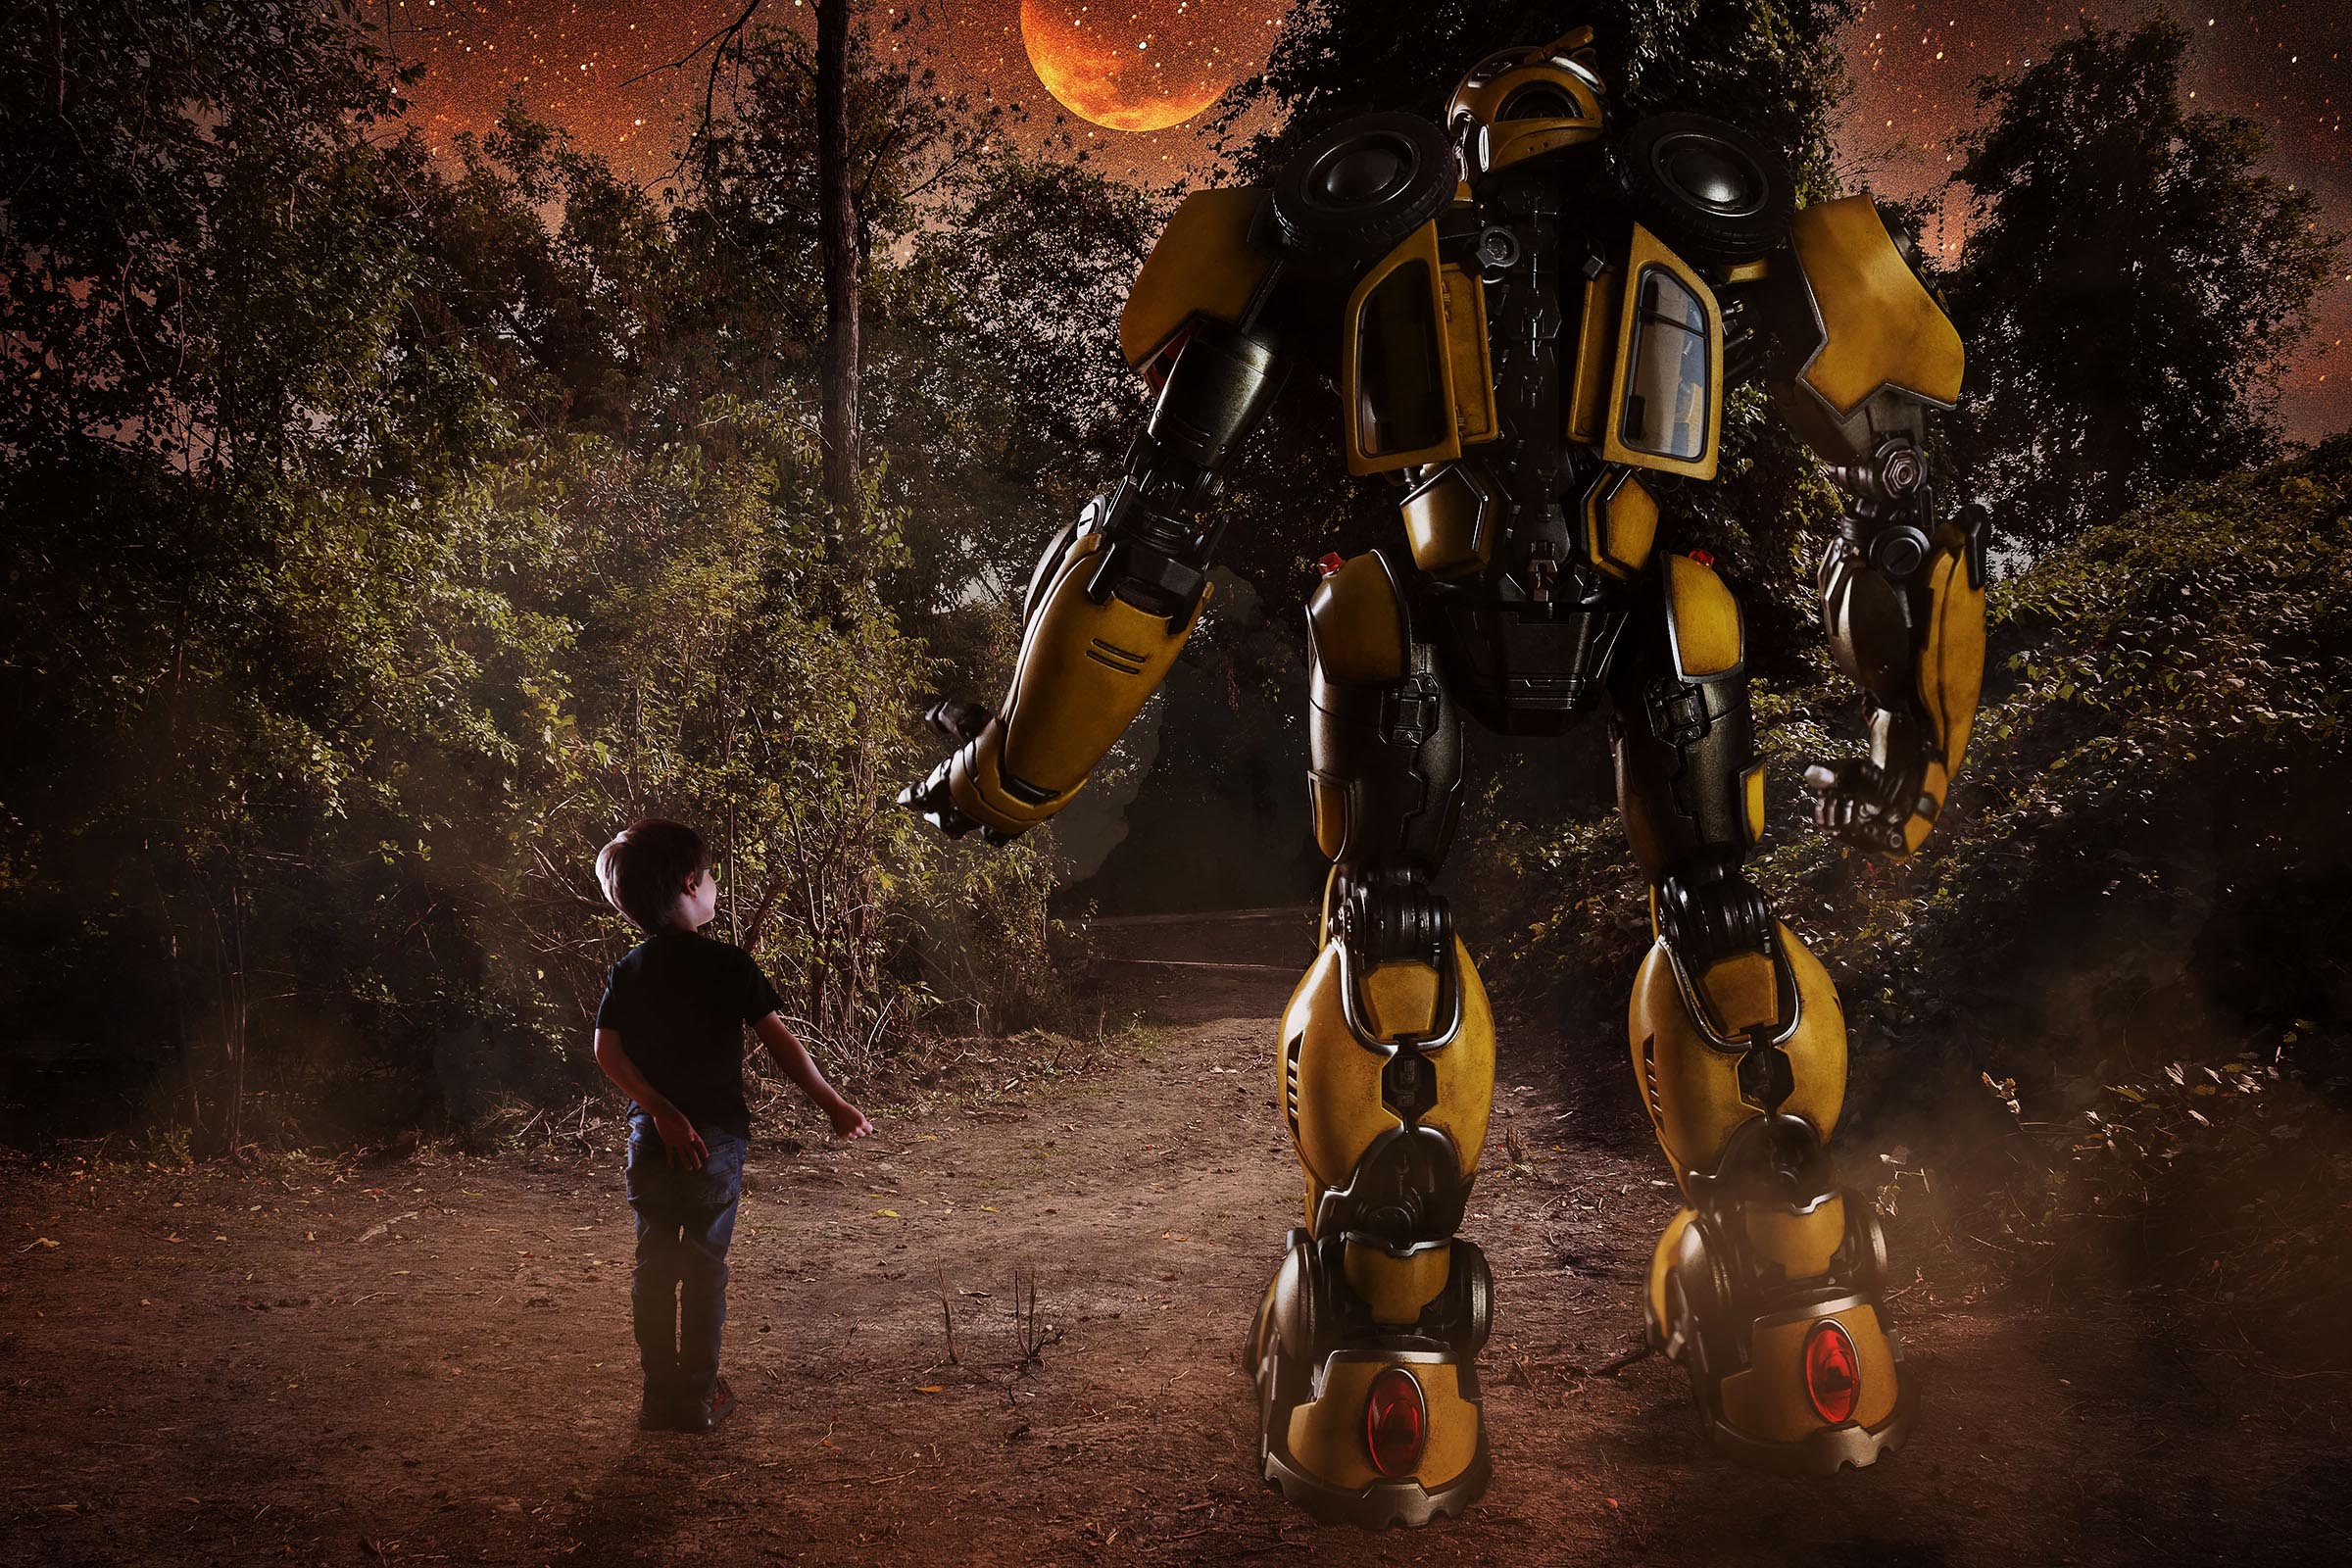 Composite garçon Transformers Bumblebee tenant la main marchant scène nocturne forêt par Tobi Malette photographe Vaudreuil-Soulanges et ouest de l'ile de montreal